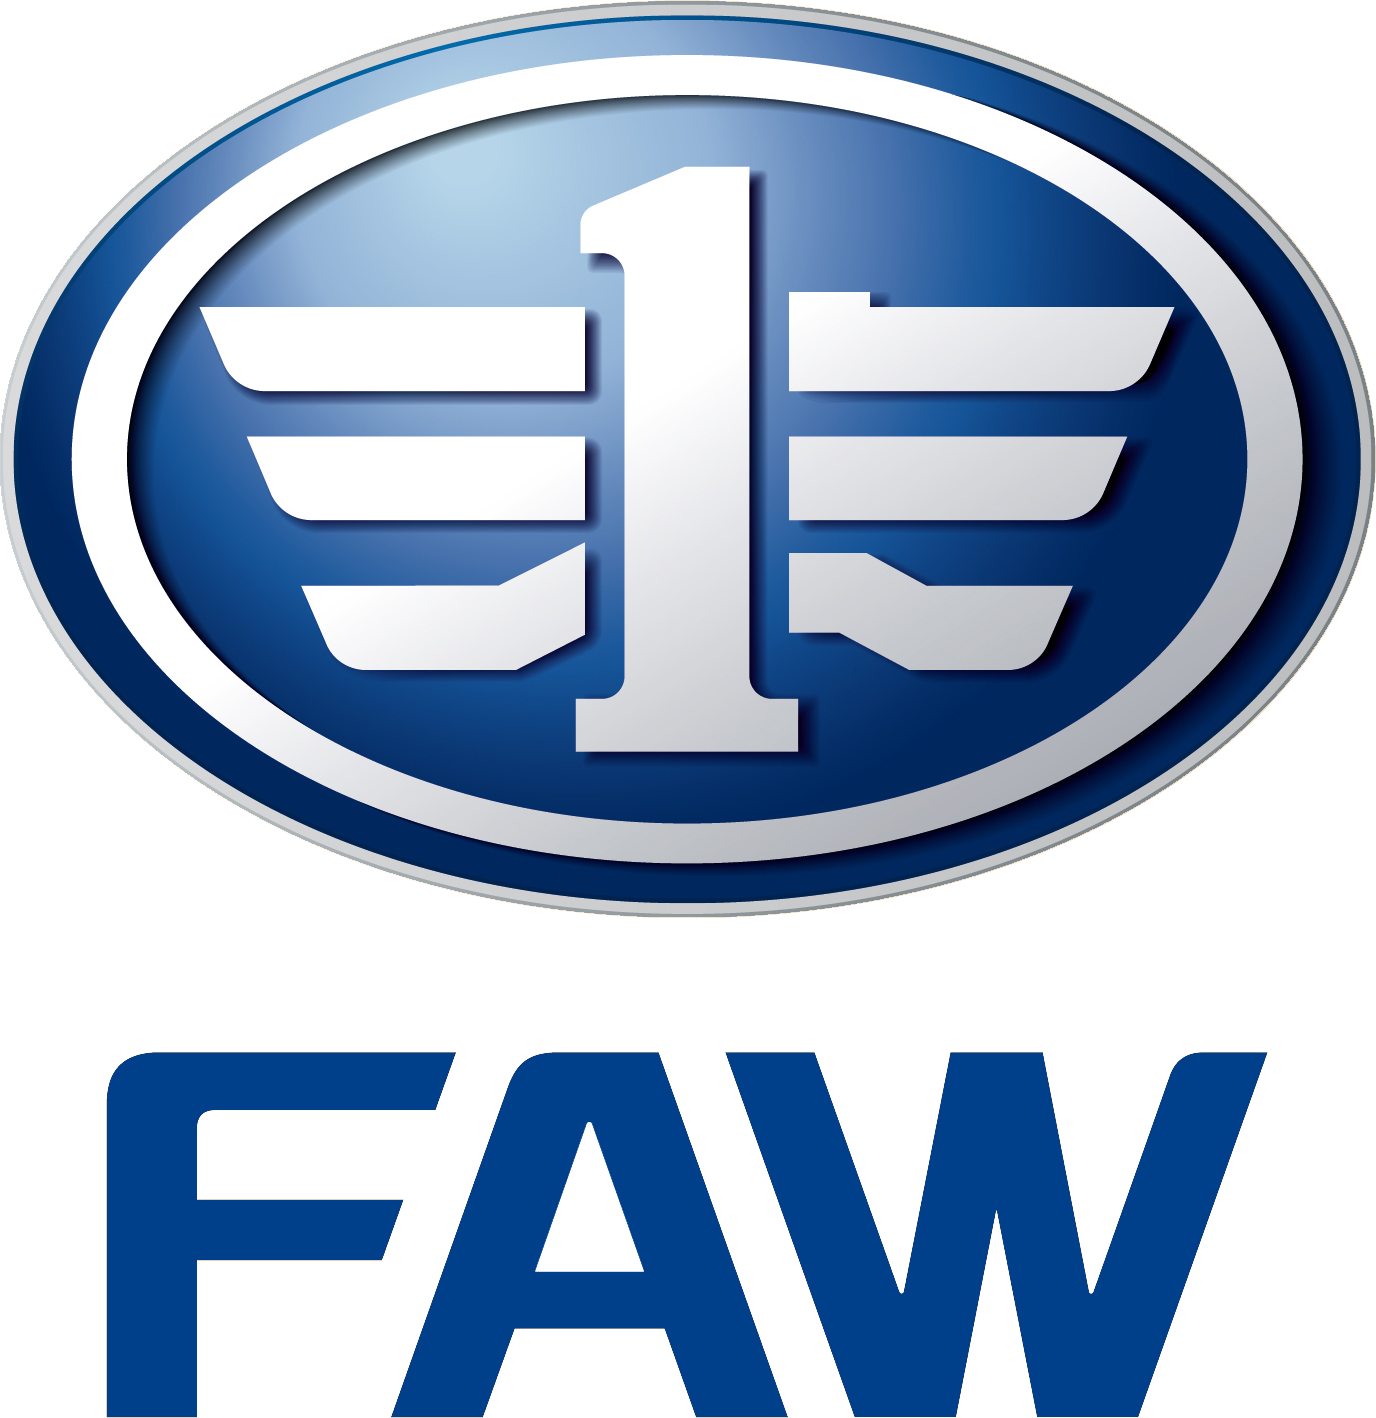 Tianjin FAW
 logo large (transparent PNG)